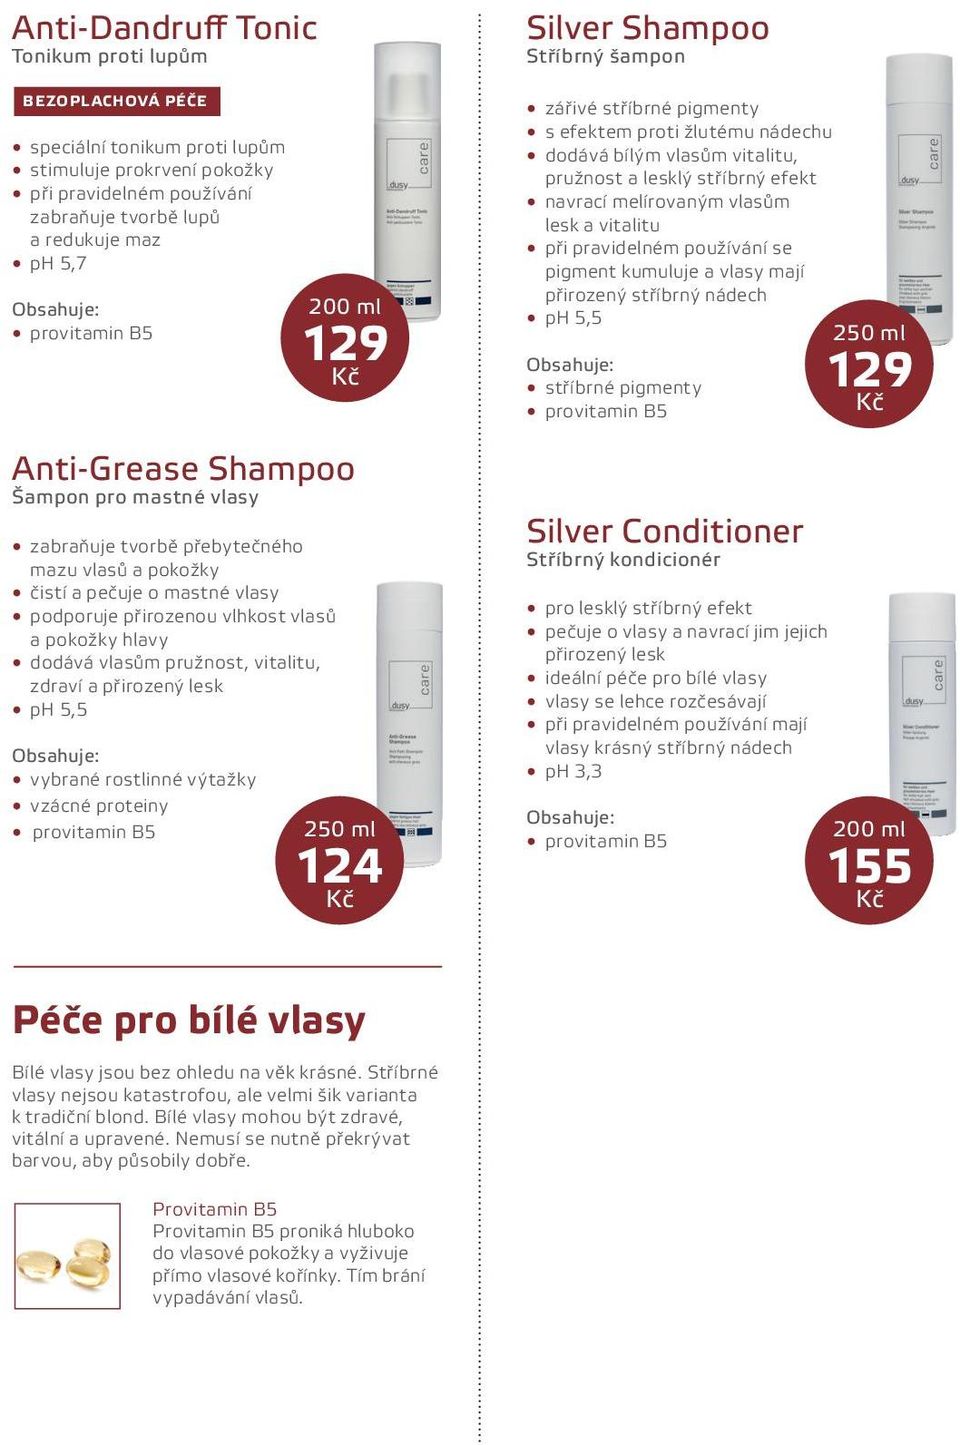 proteiny 129 Anti-Grease Shampoo Šampon pro mastné vlasy Silver Shampoo Stříbrný šampon zářivé stříbrné pigmenty s efektem proti žlutému nádechu dodává bílým vlasům vitalitu, pružnost a lesklý